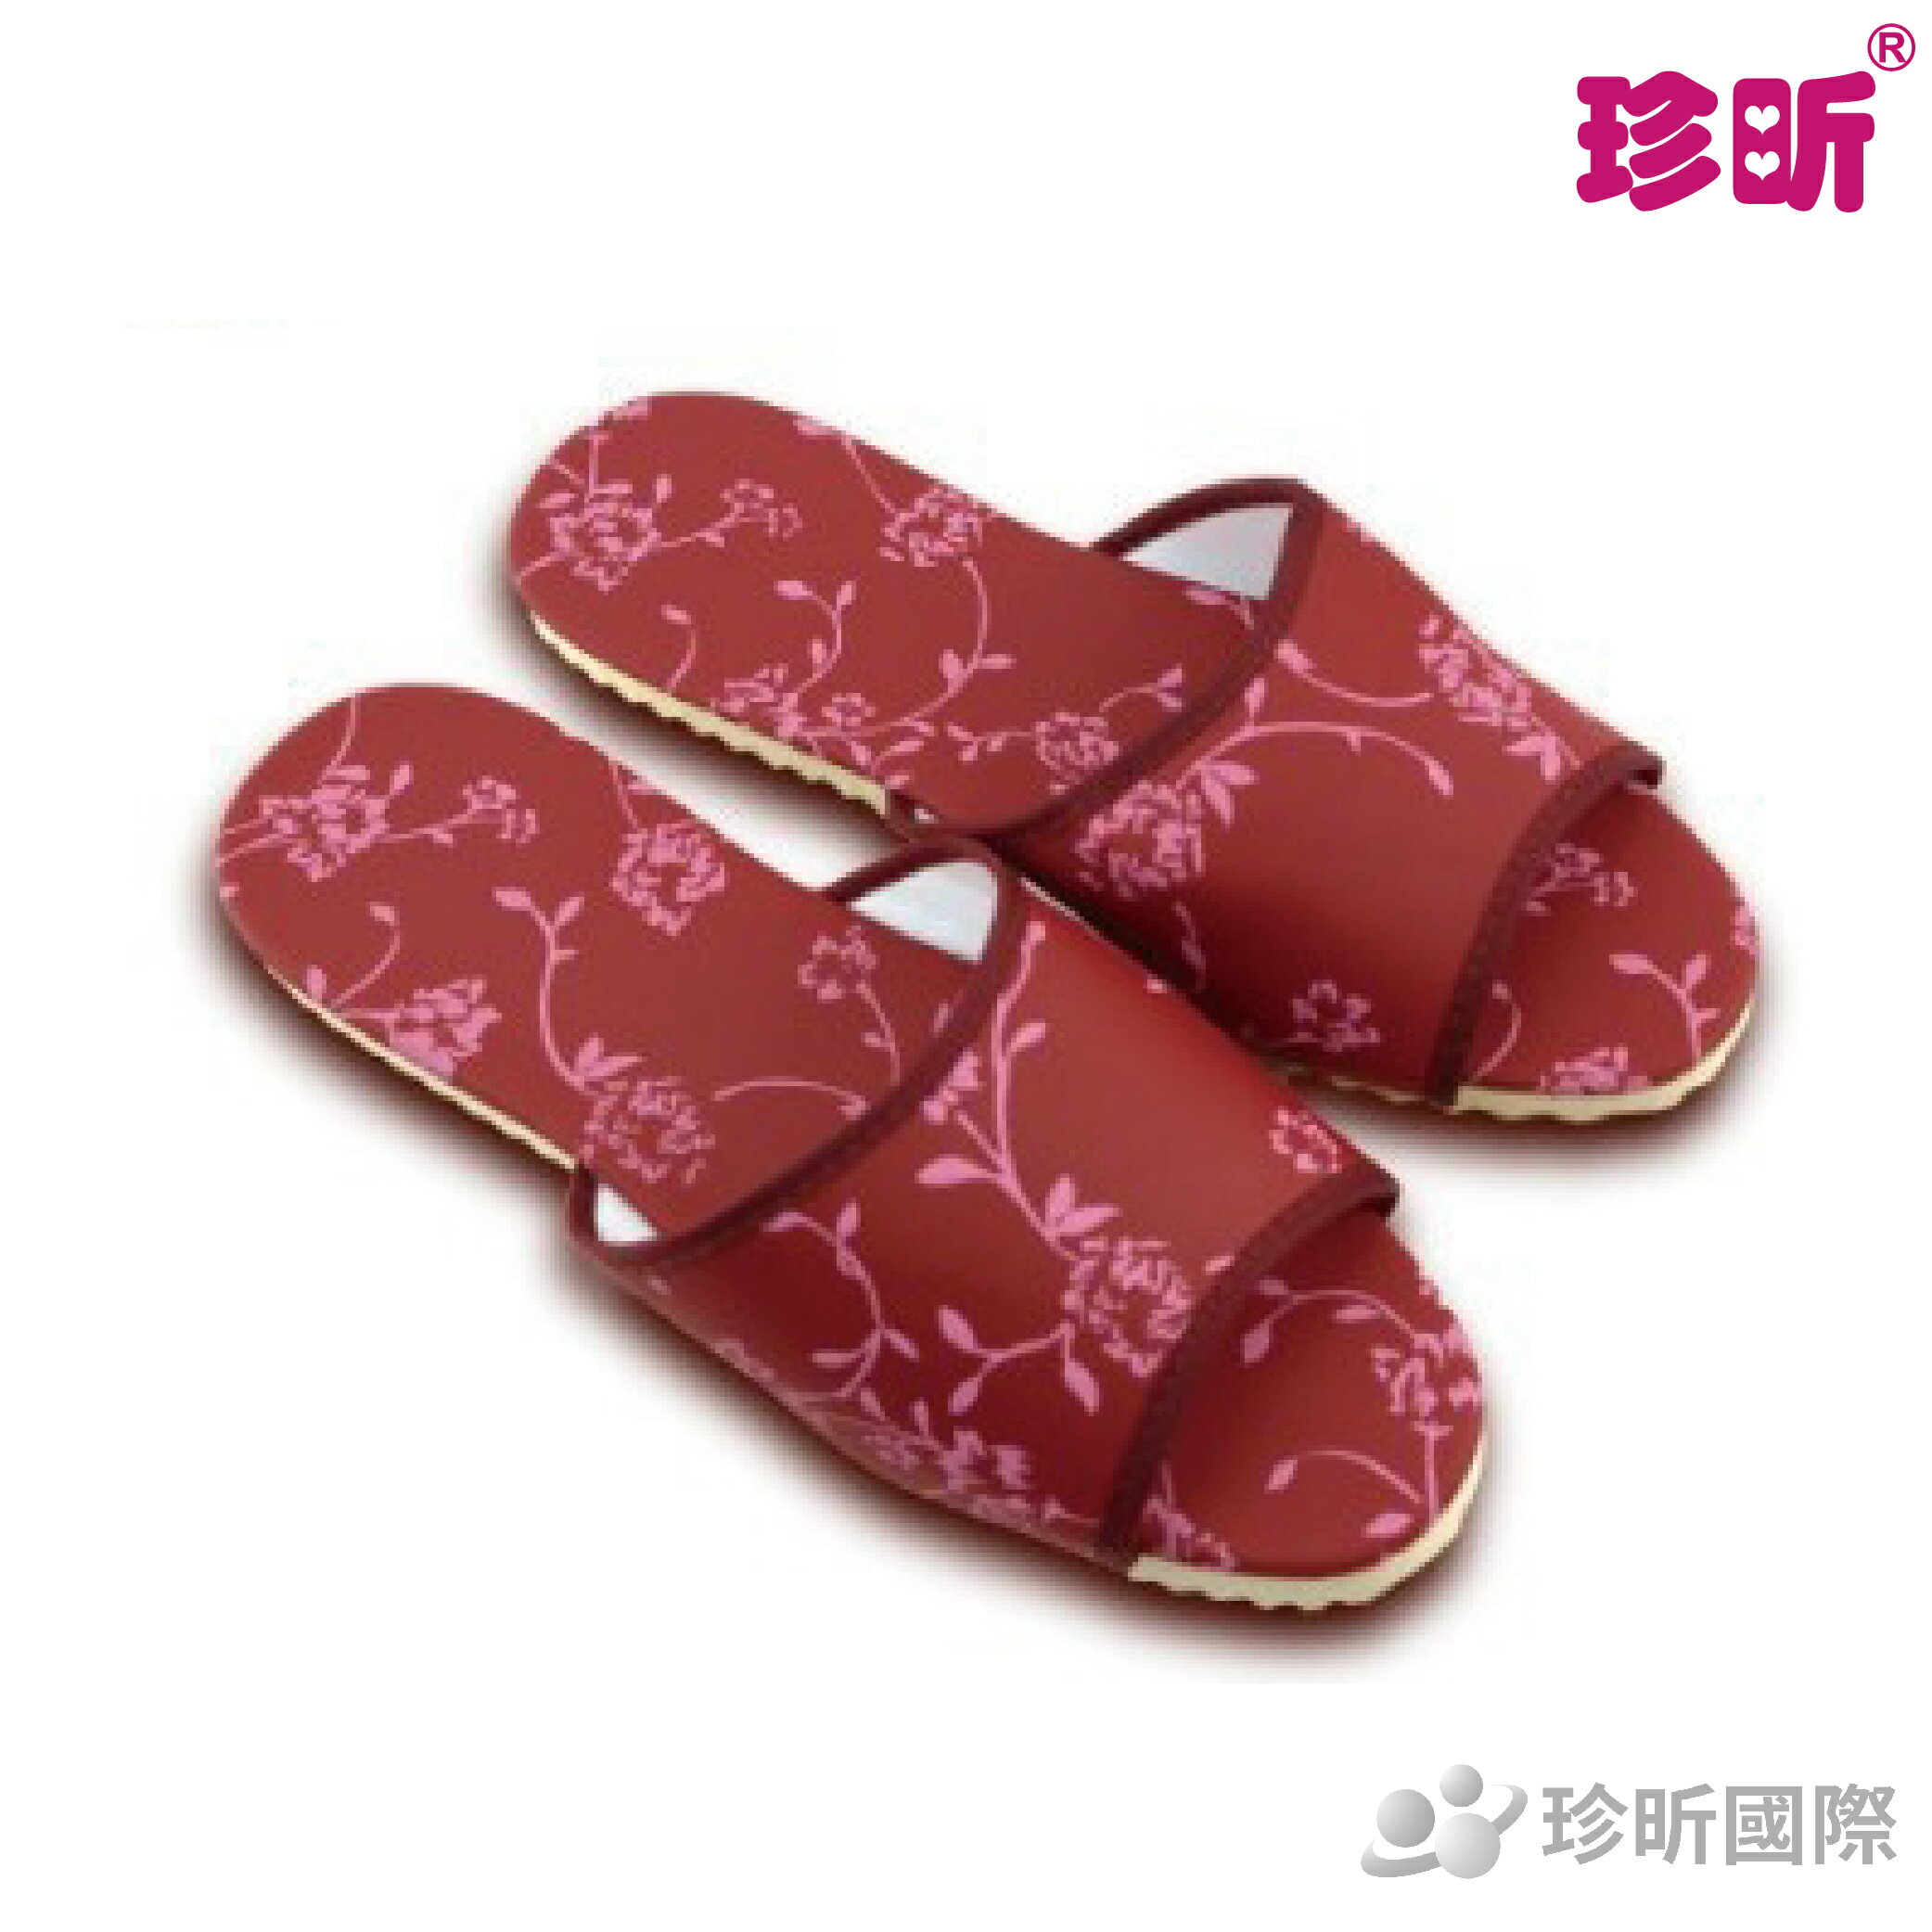 【珍昕】台灣製 居家室內拖鞋~4款可選(約28.5cm/26.5cm) /拖鞋/室內拖鞋